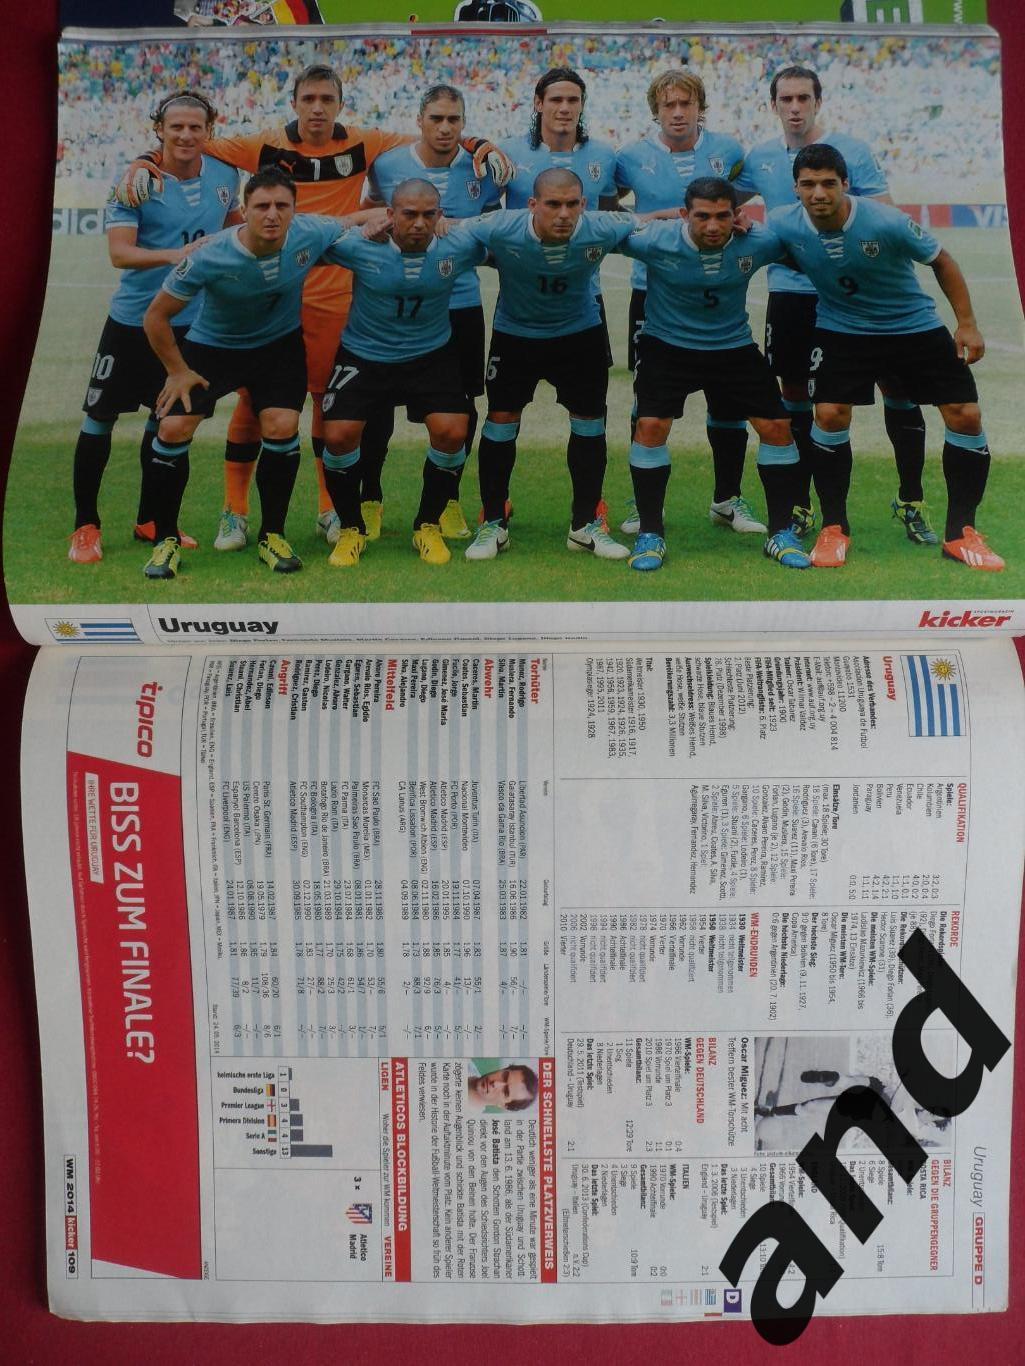 Kicker (спецвыпуск) чемпионат мира по футболу 2014 (постеры всех команд), 3